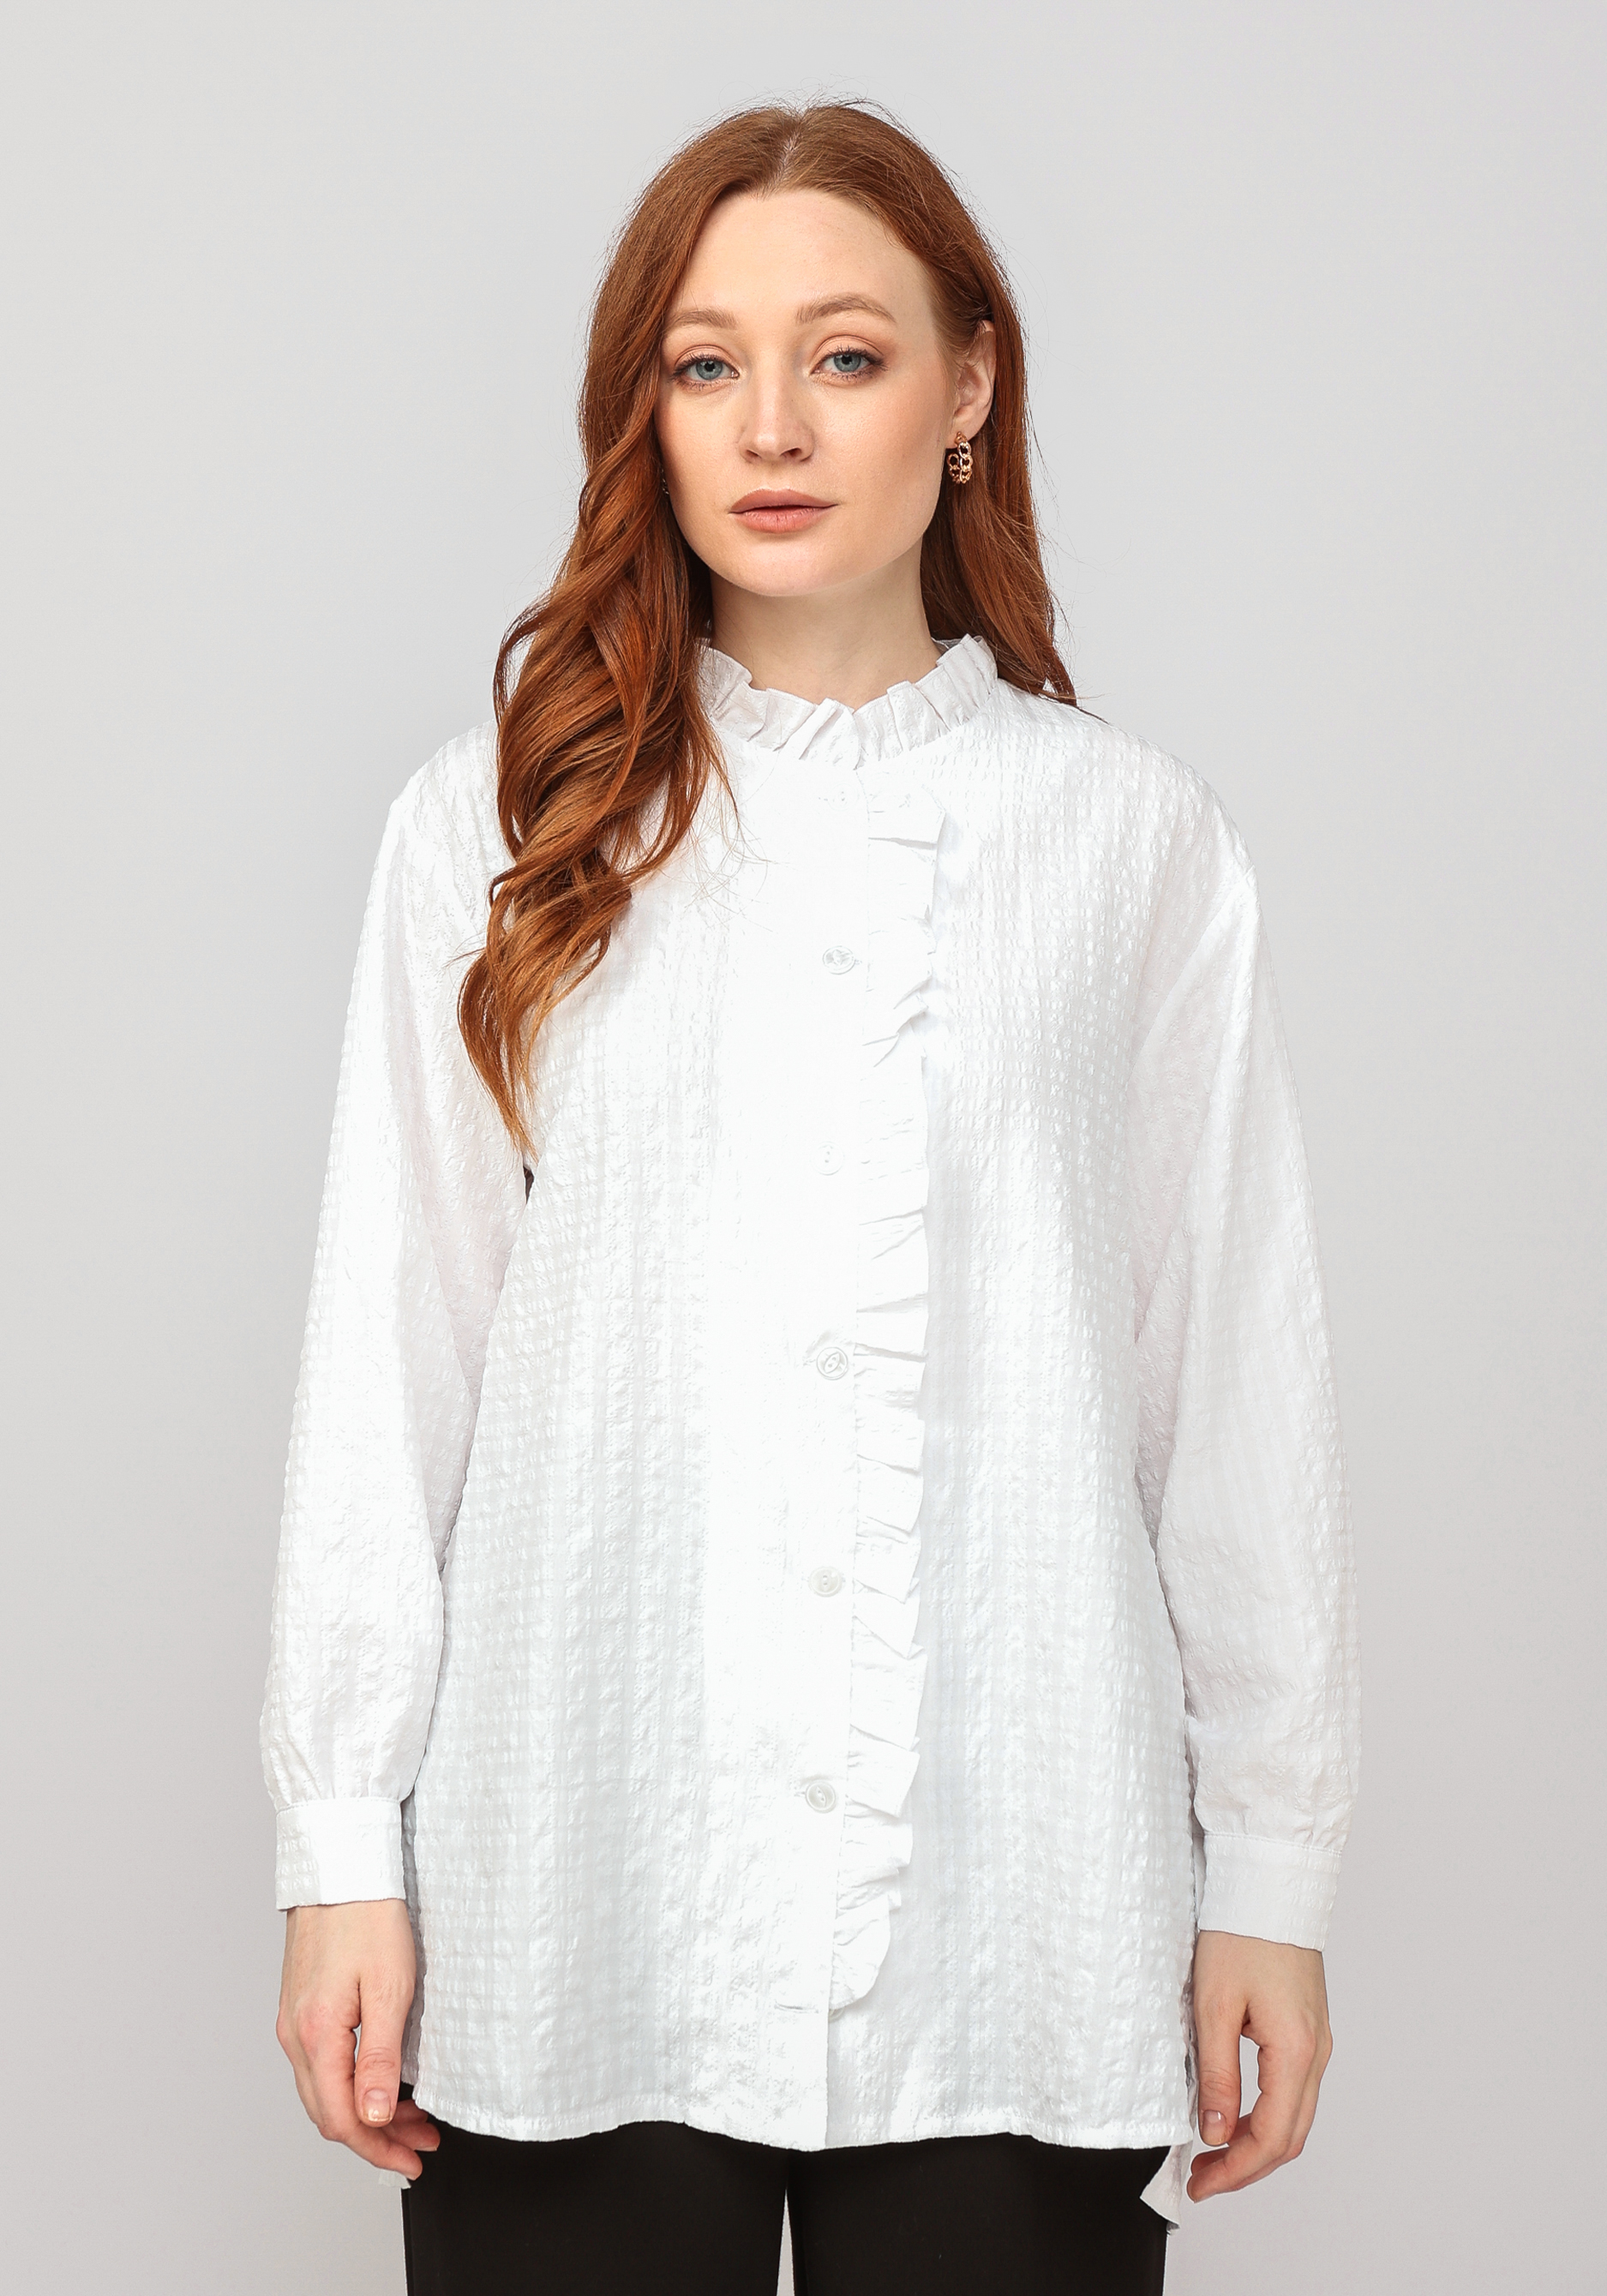 Блуза с рюшей по горловине и борту Frida, цвет белый, размер 46-48 - фото 10